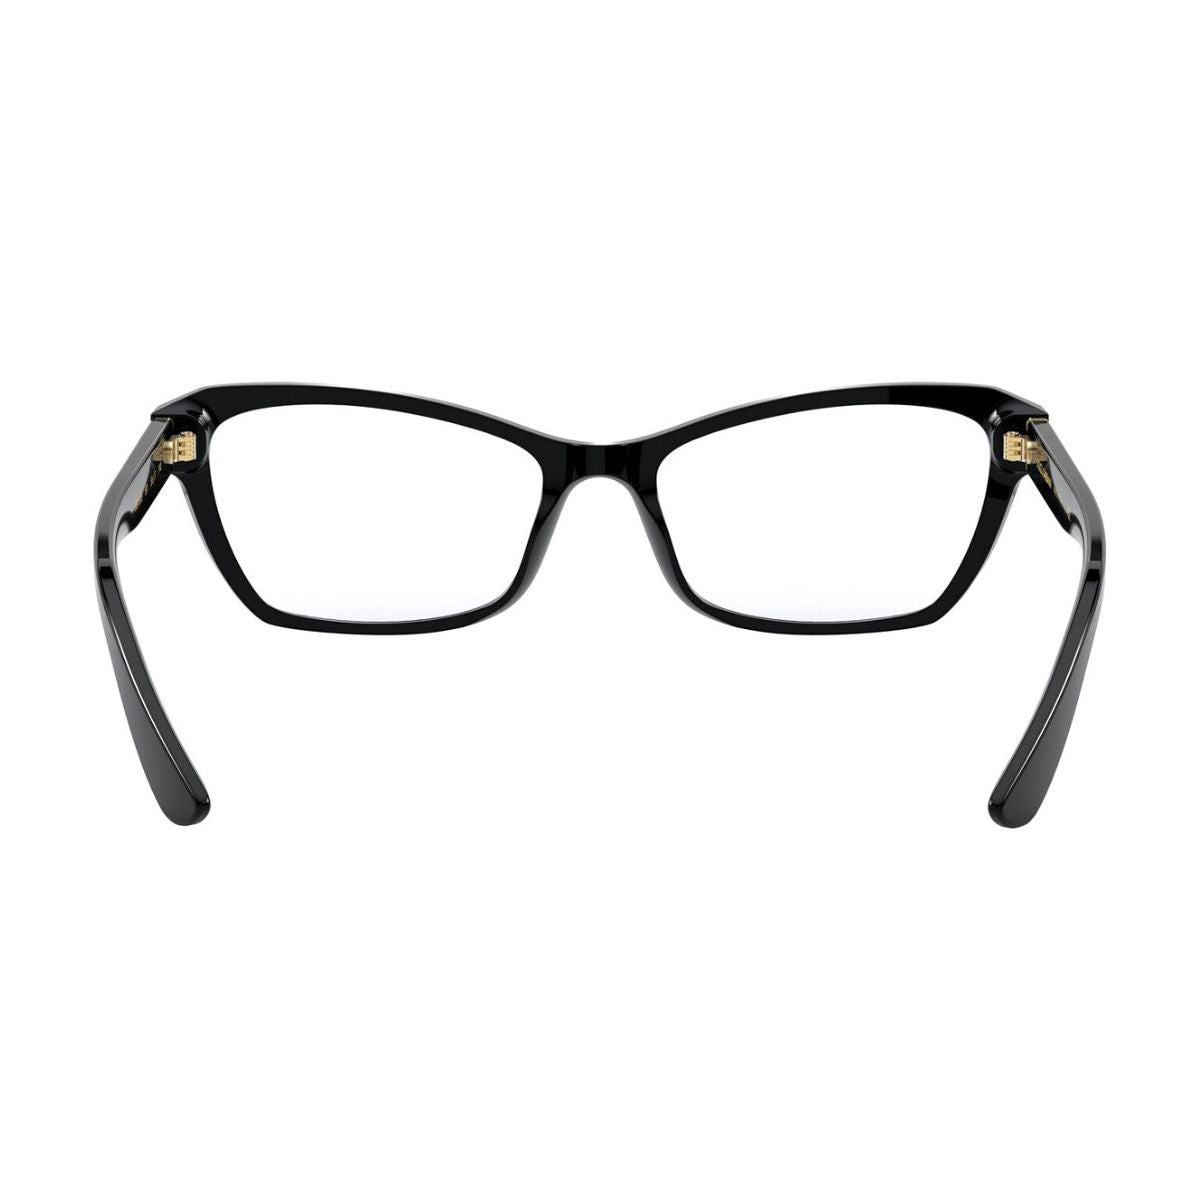 "Dolce&Gabbana 3328 501 eyesight glasses frame for women's online at optorium"